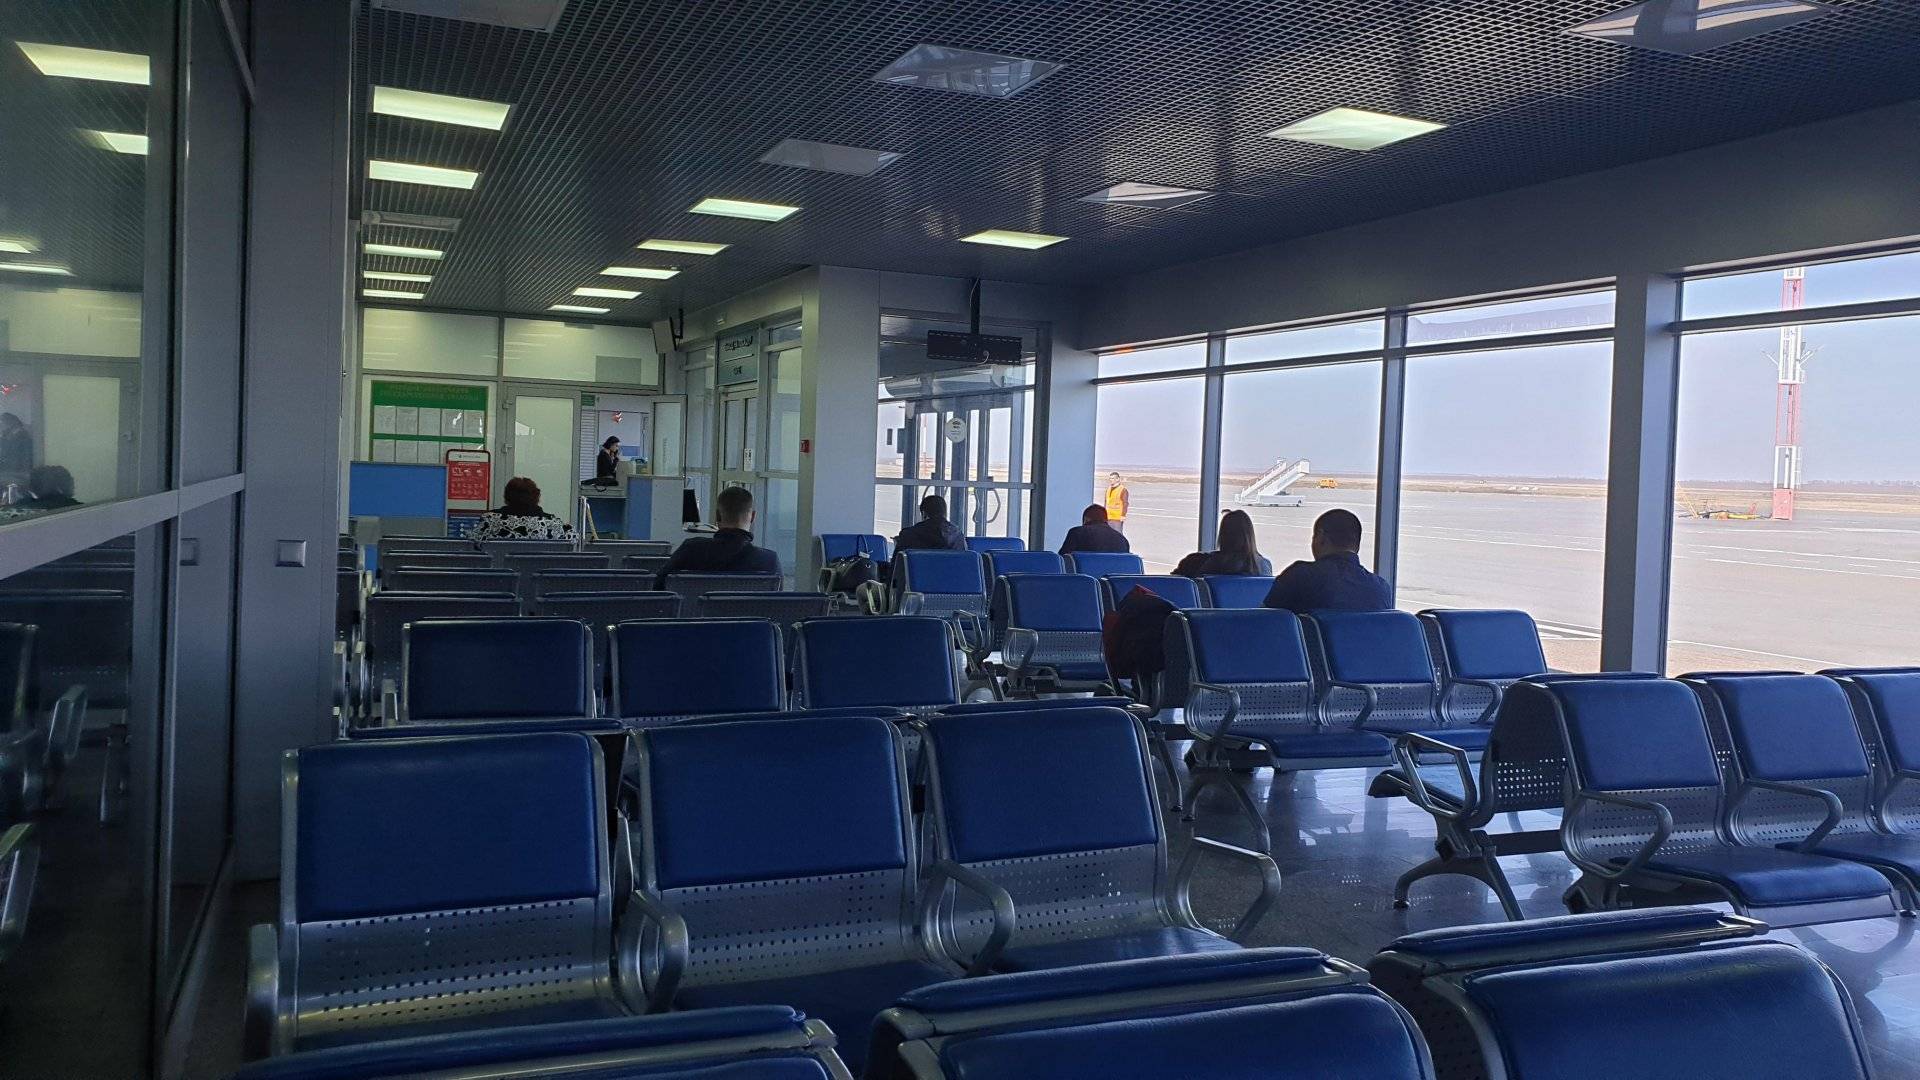 Телефон справочной аэропорта оренбурга